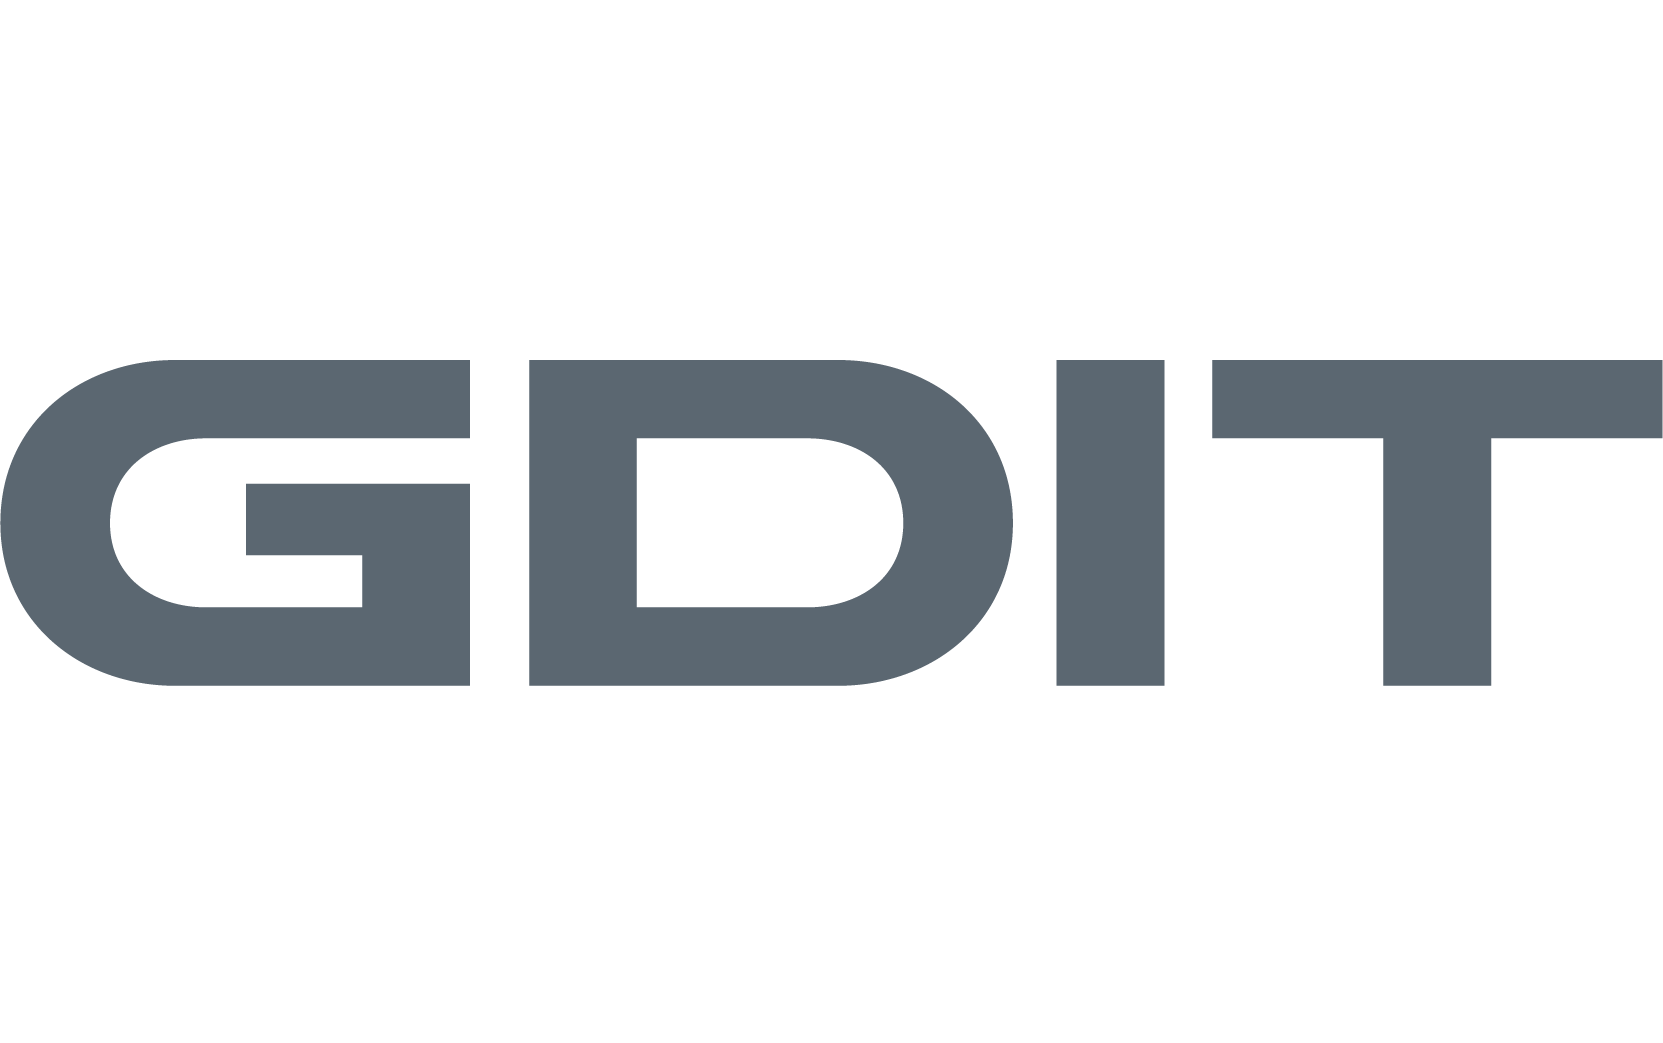 gdit-logo